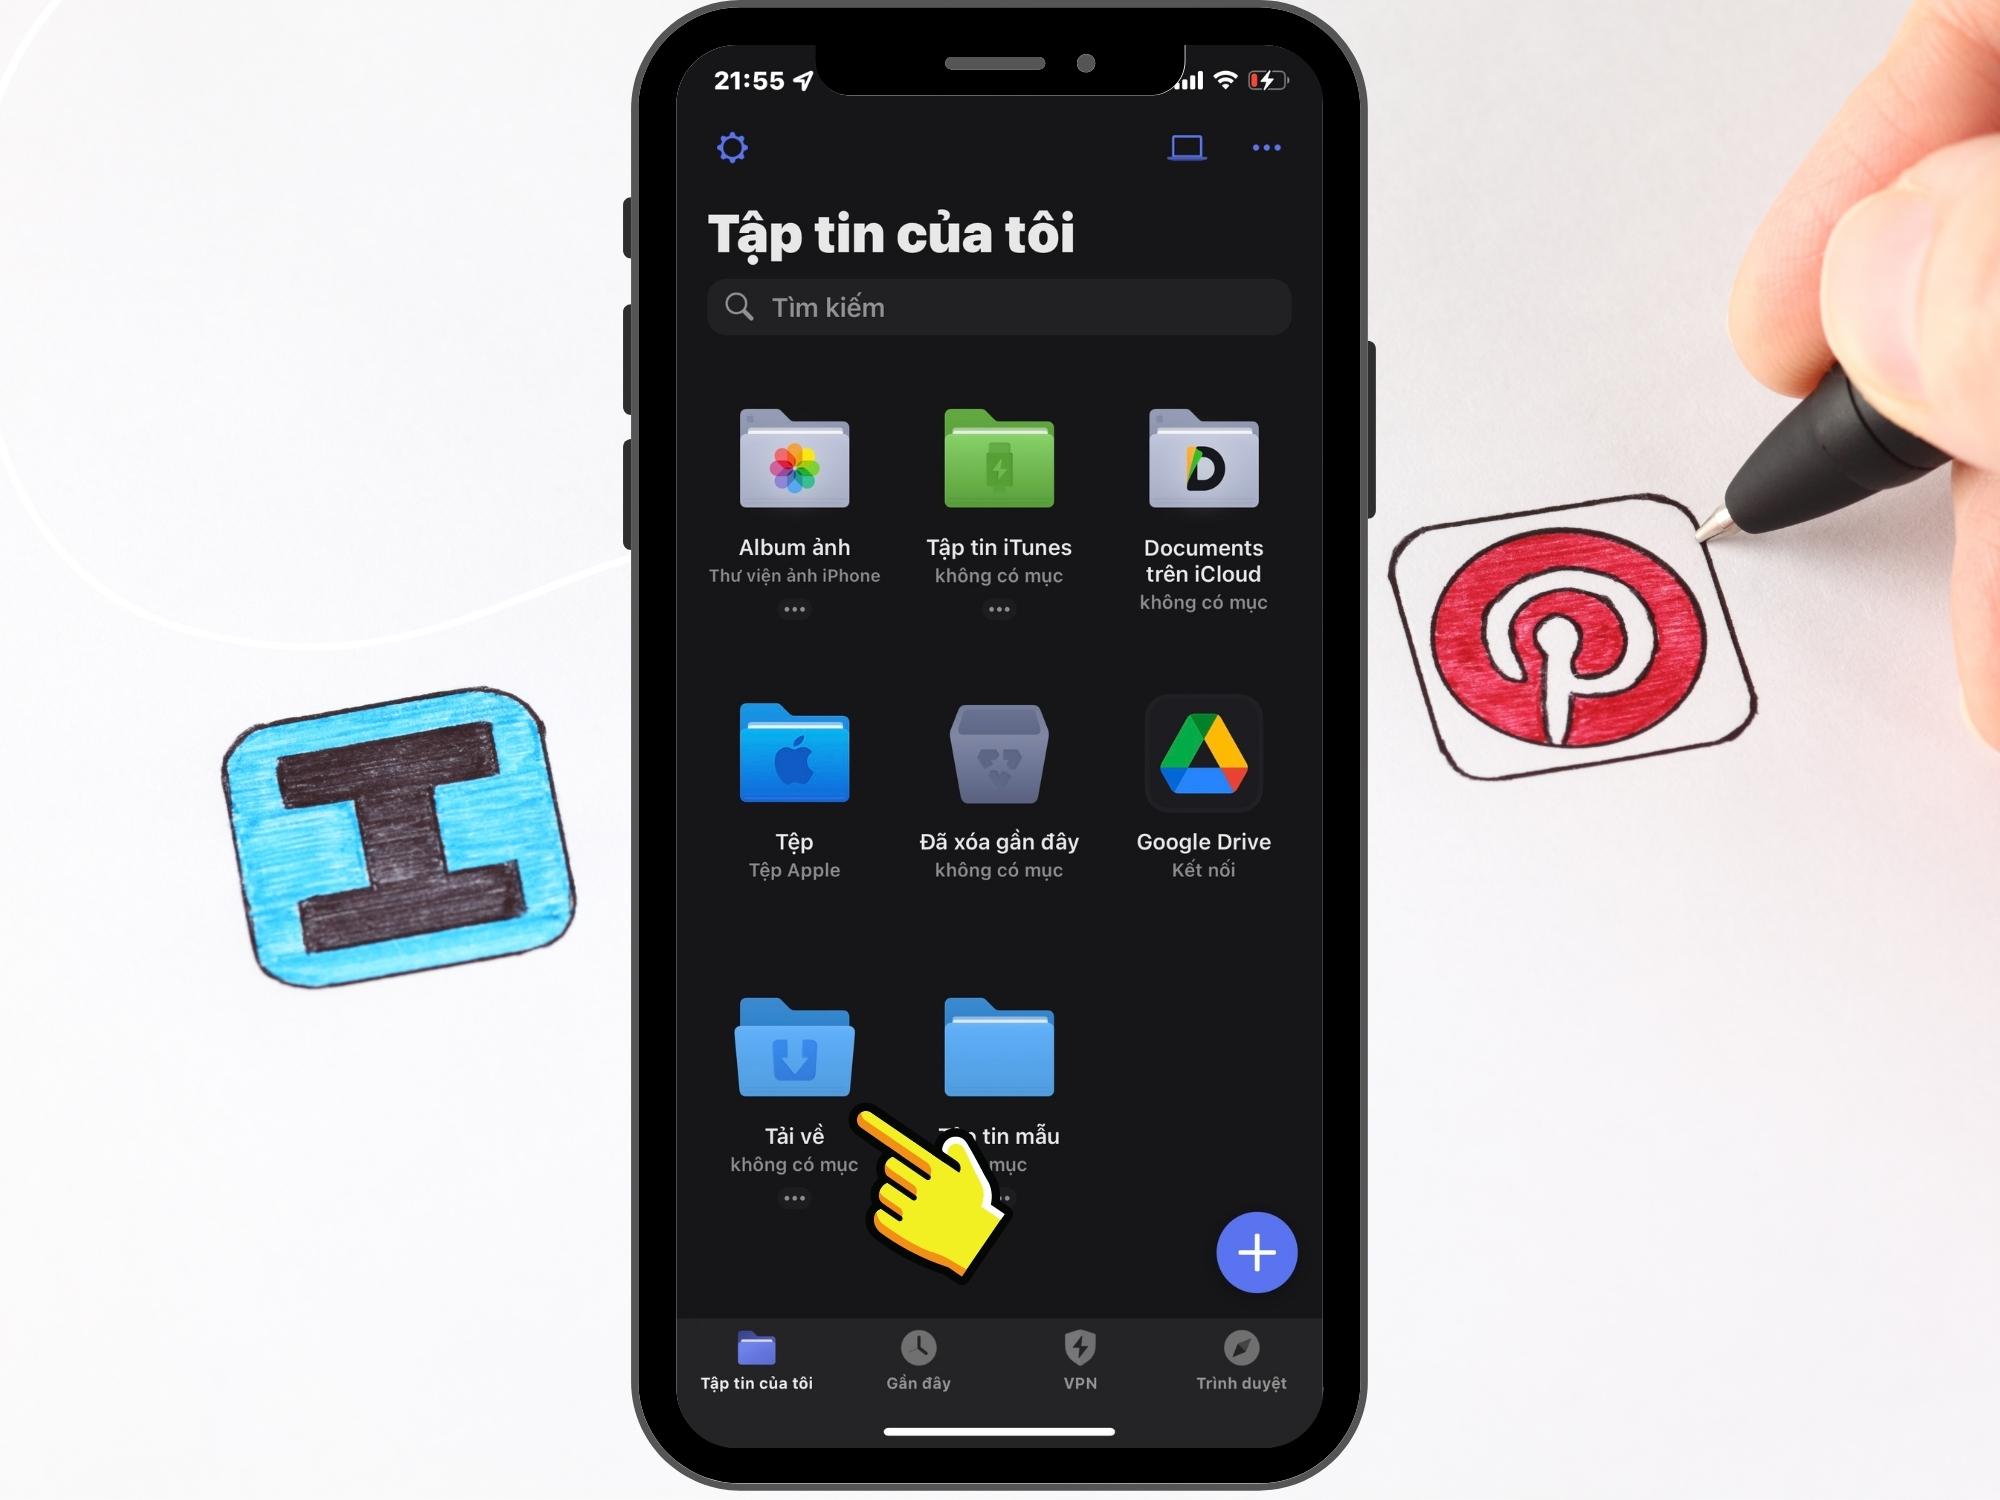 Sforum - Trang thông tin công nghệ mới nhất 11-8 Hướng dẫn cách tải video Pinterest về điện thoại và máy tính trong tích tắc 